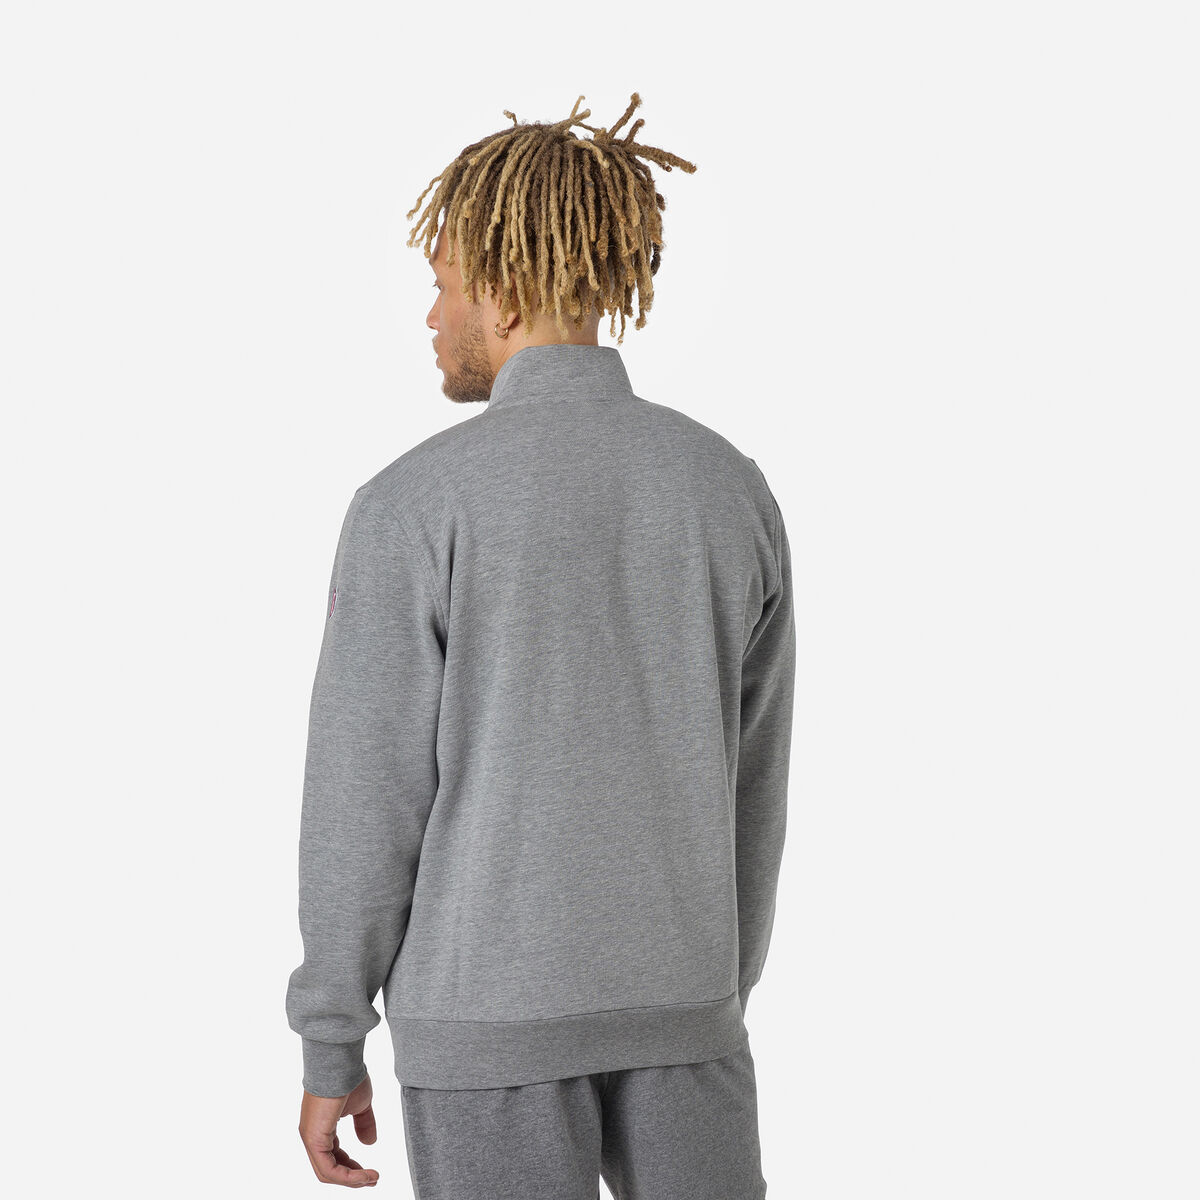 Men's full-zip logo cotton sweatshirt